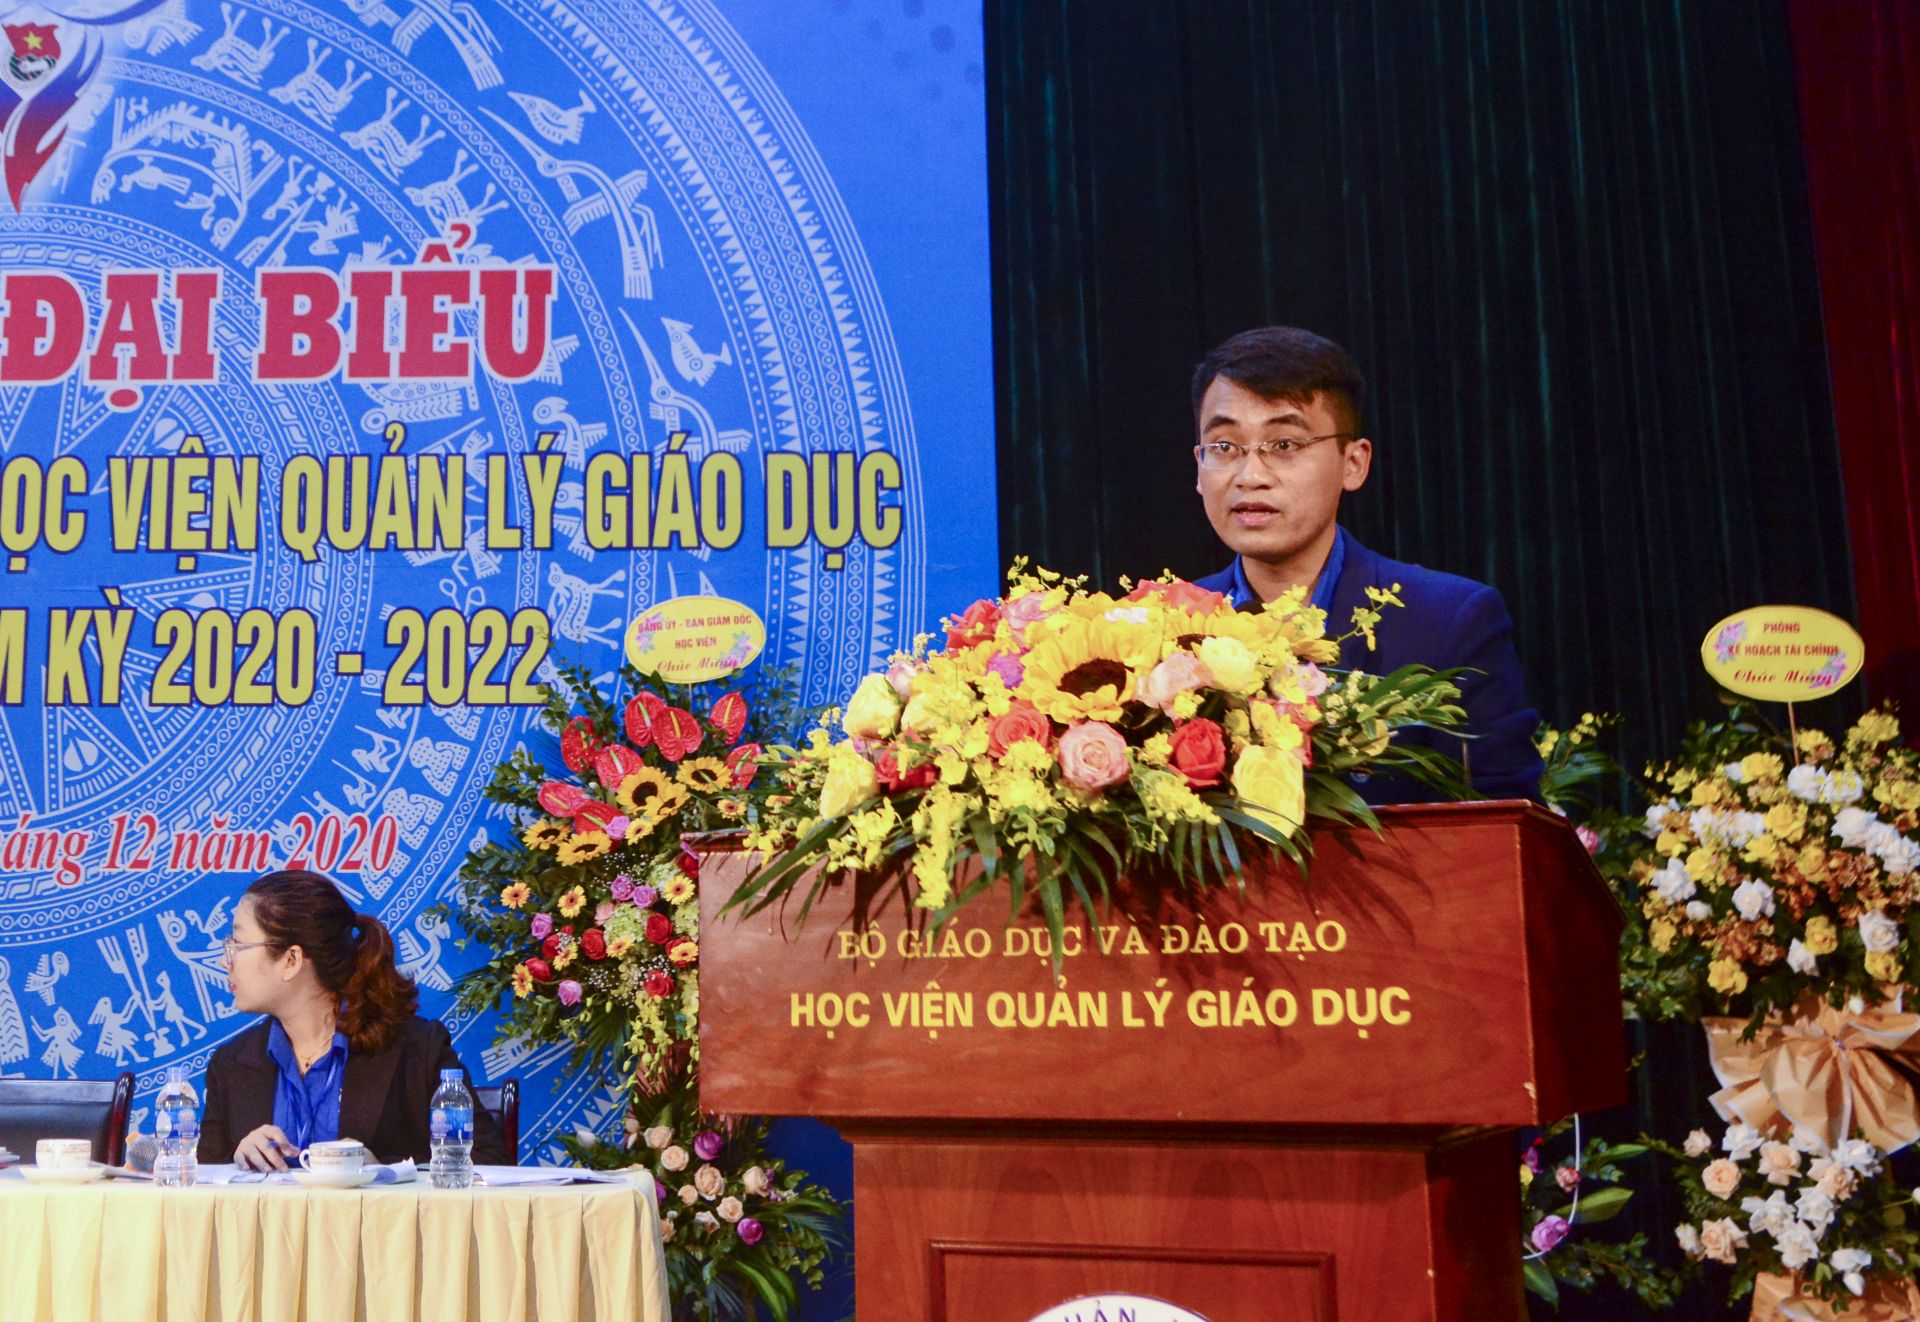 Đ/c Nguyễn Huy Hoàng, Bí thư Đoàn Thanh niên Học viện Quản lý giáo dục nhiệm kỳ 2020-2022